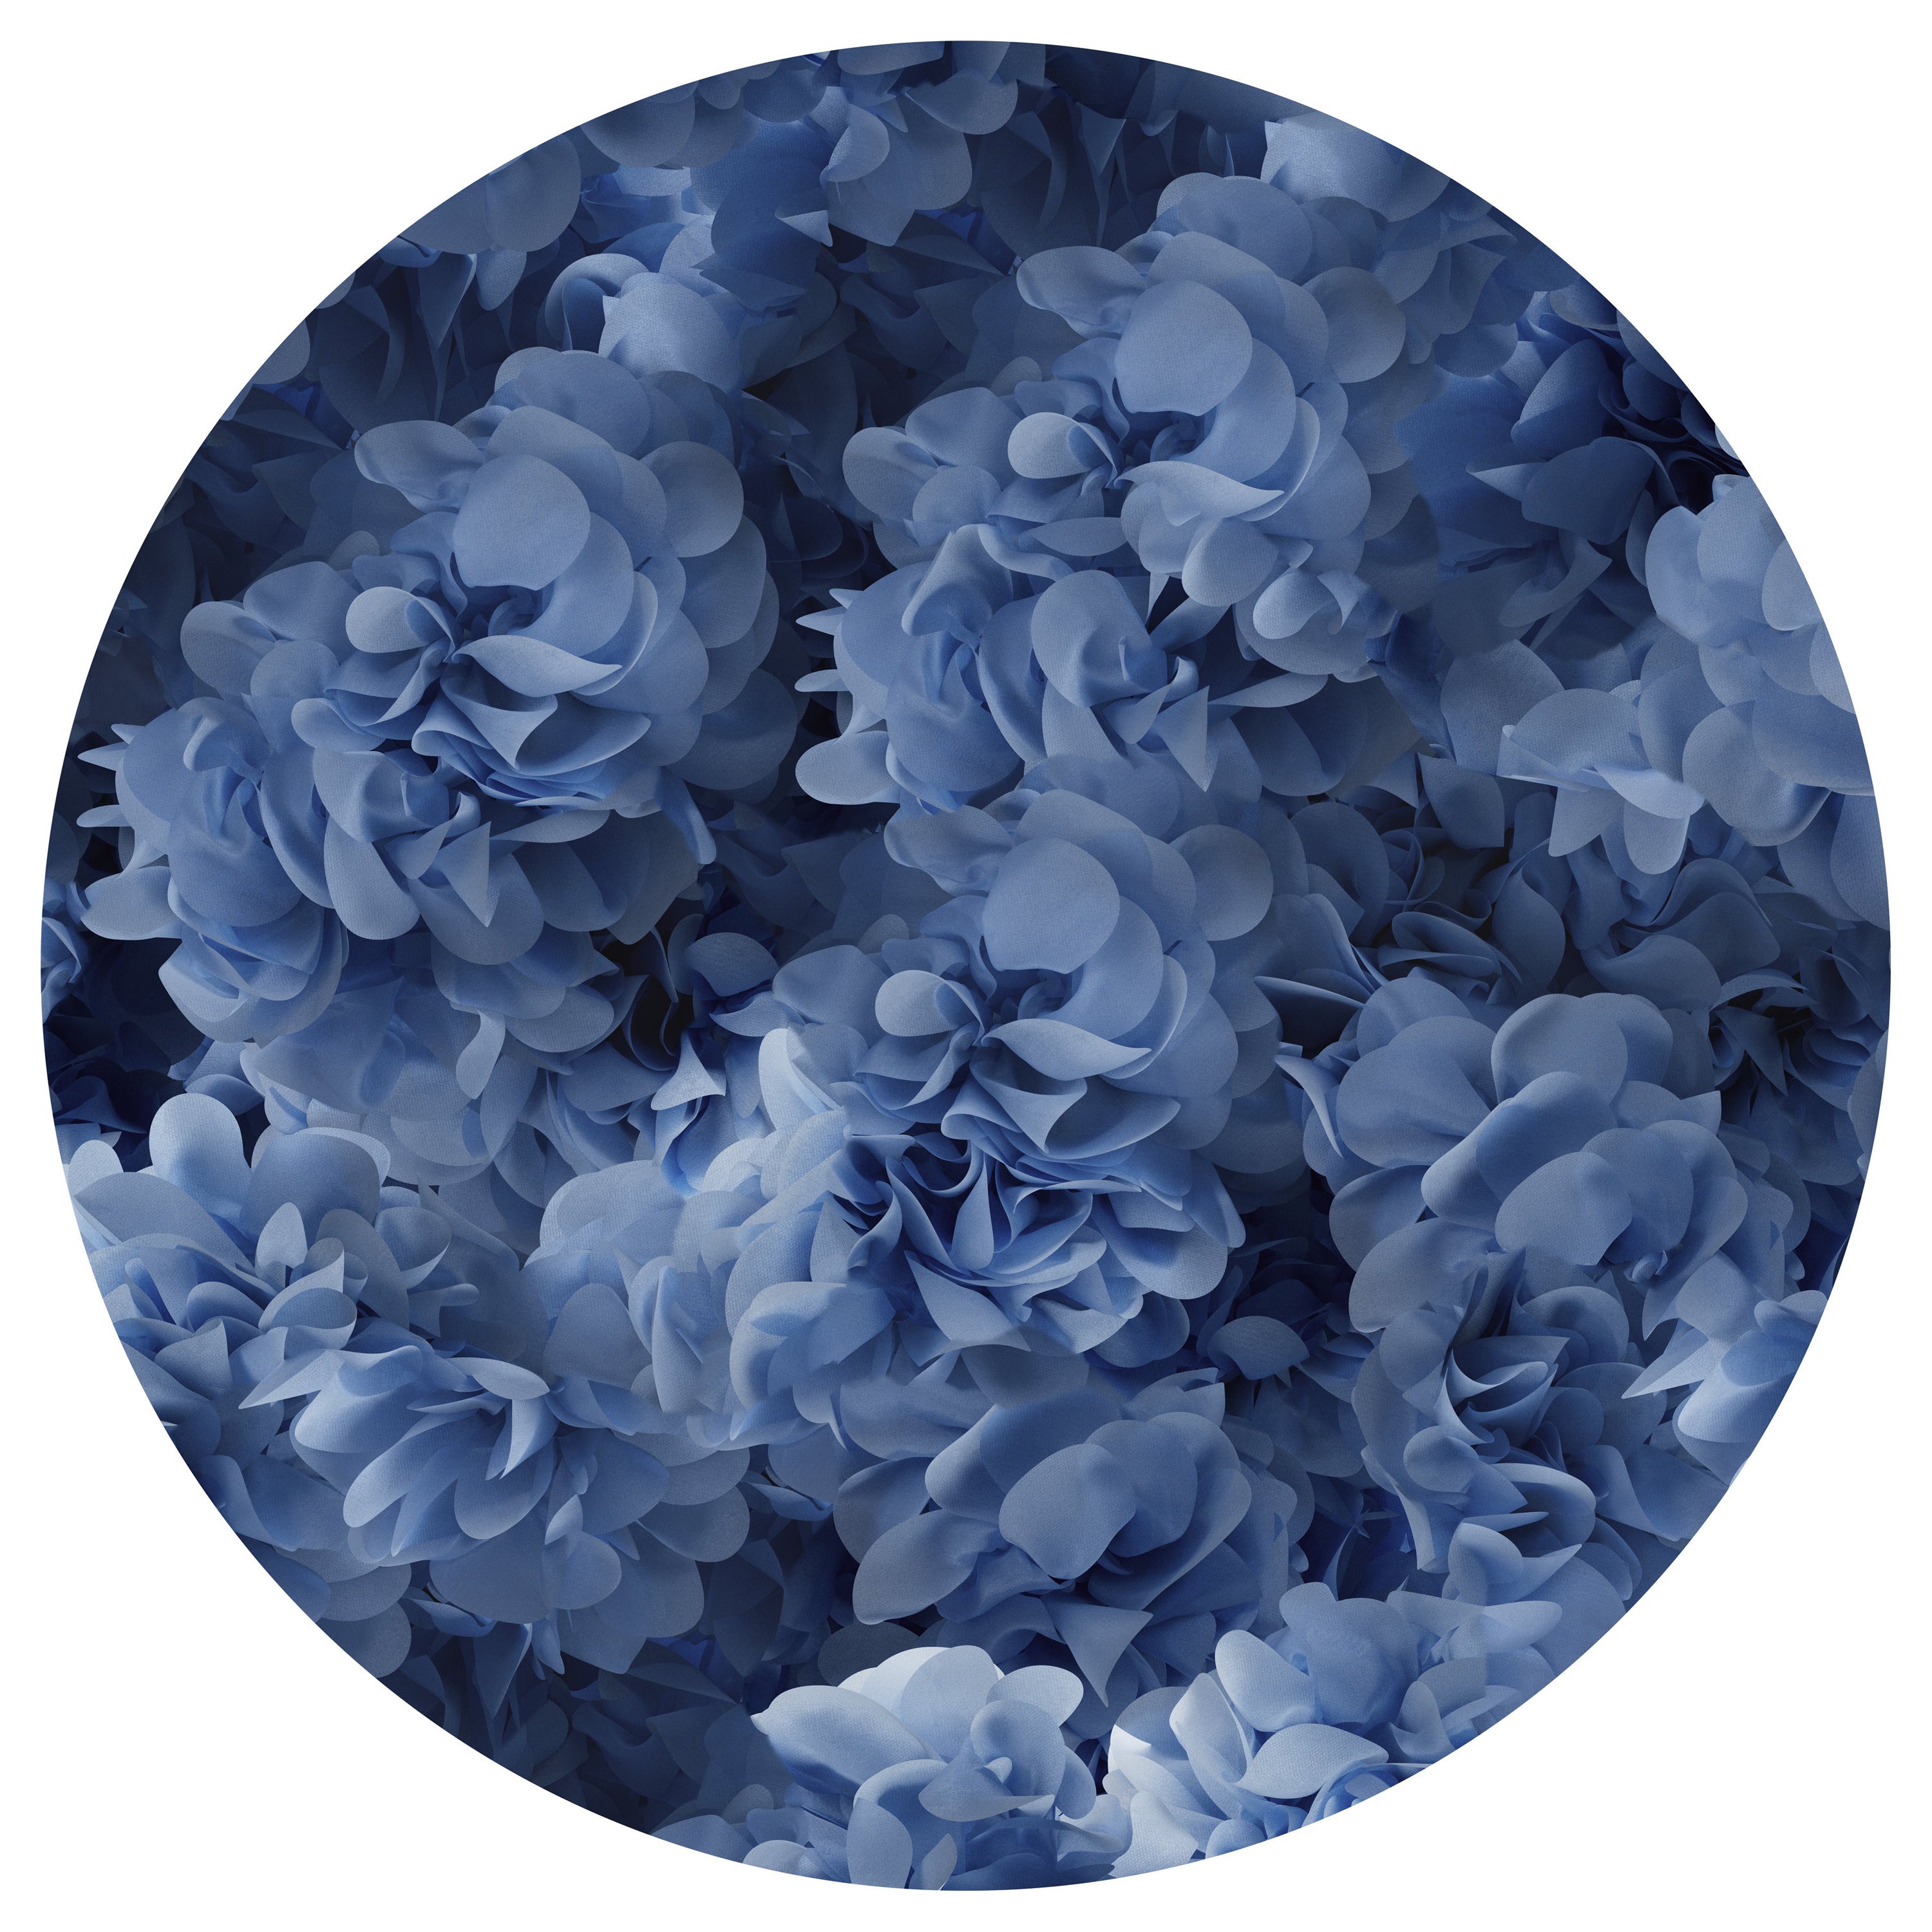 Grand tapis rond Moooi bleu Hortensia en polyamide à poils bas d'Andrs Reisinger